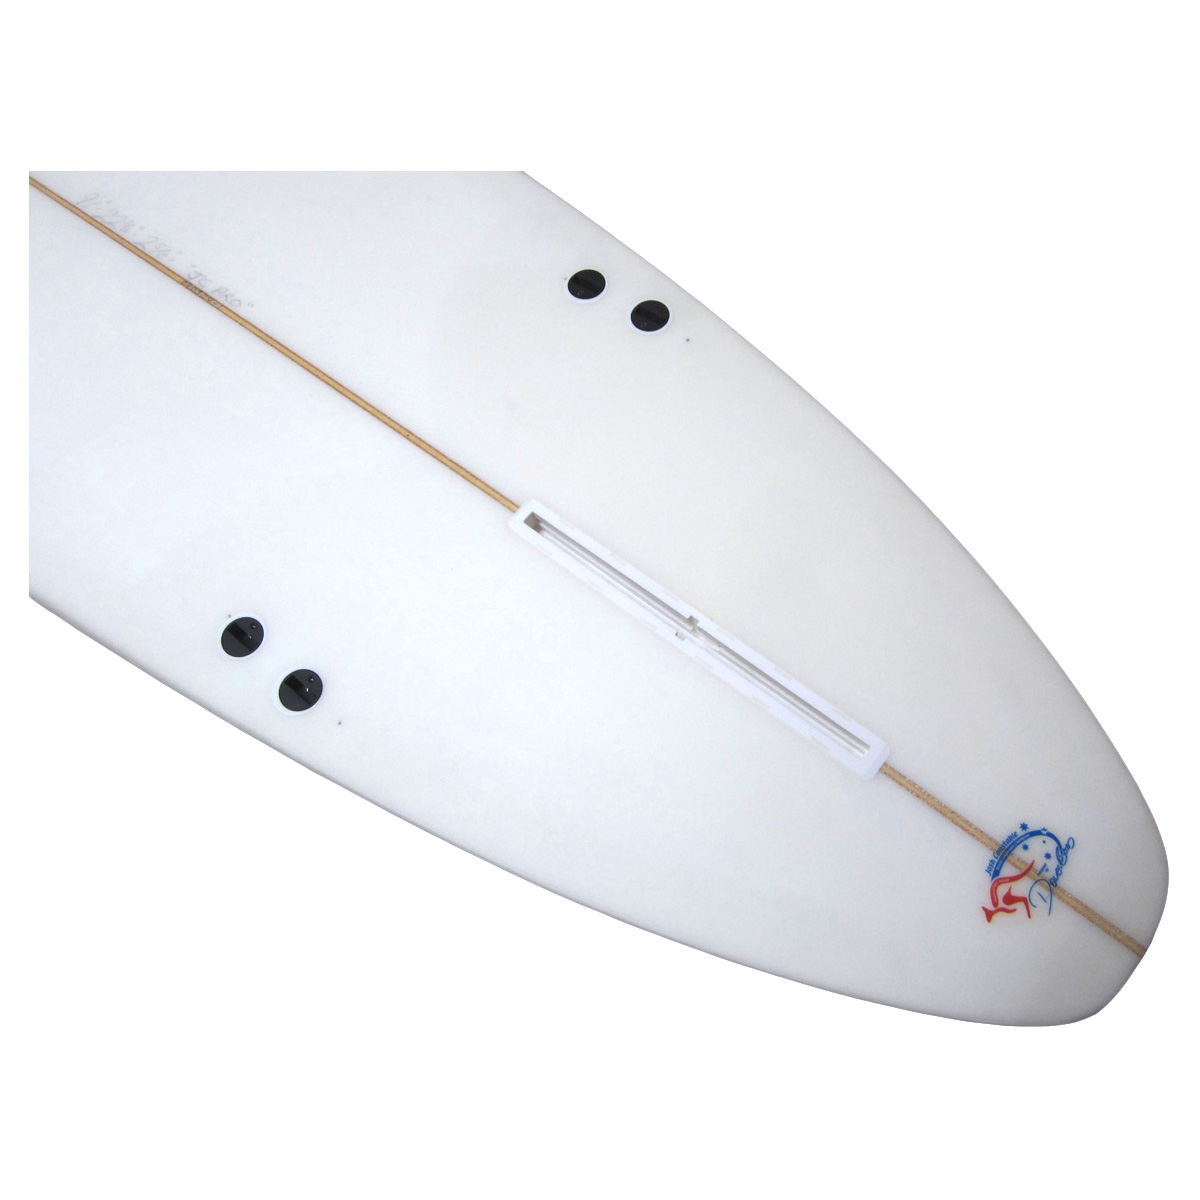 Noosa Longboards / JC PRO Model 9`1 EPS